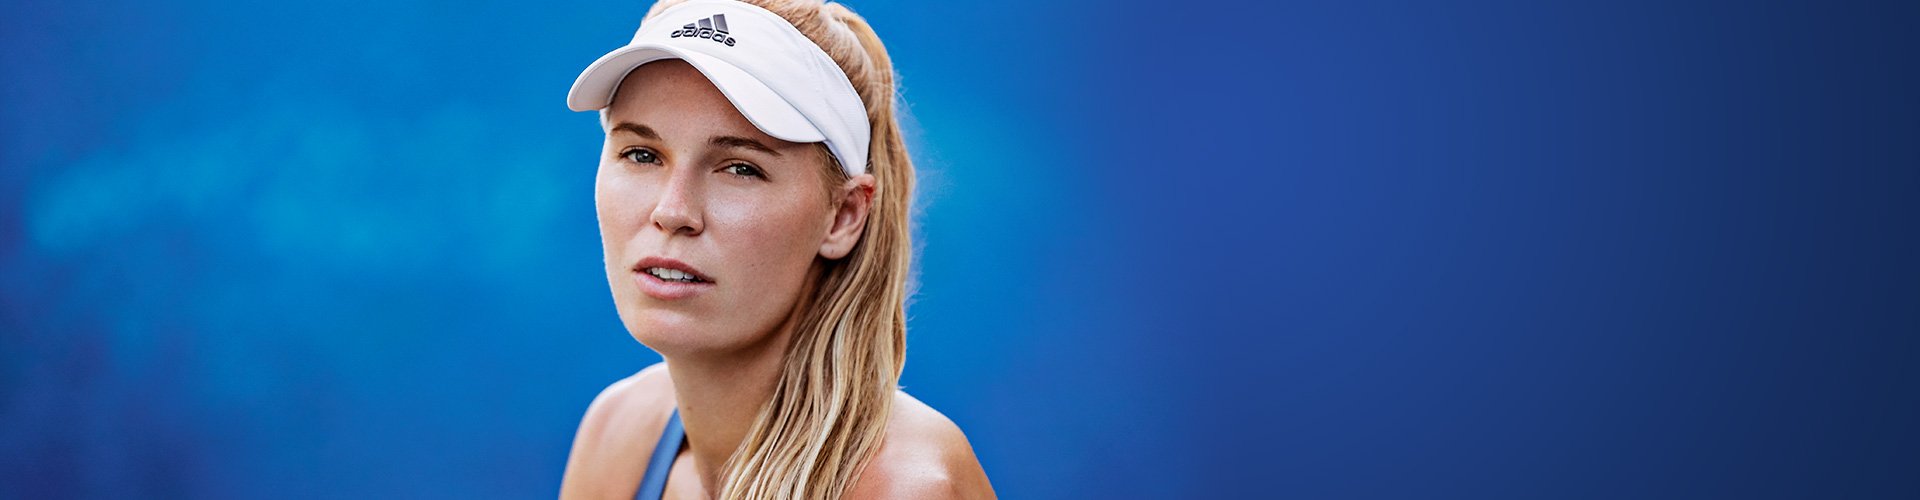 Caroline Wozniacki Tennis Gear